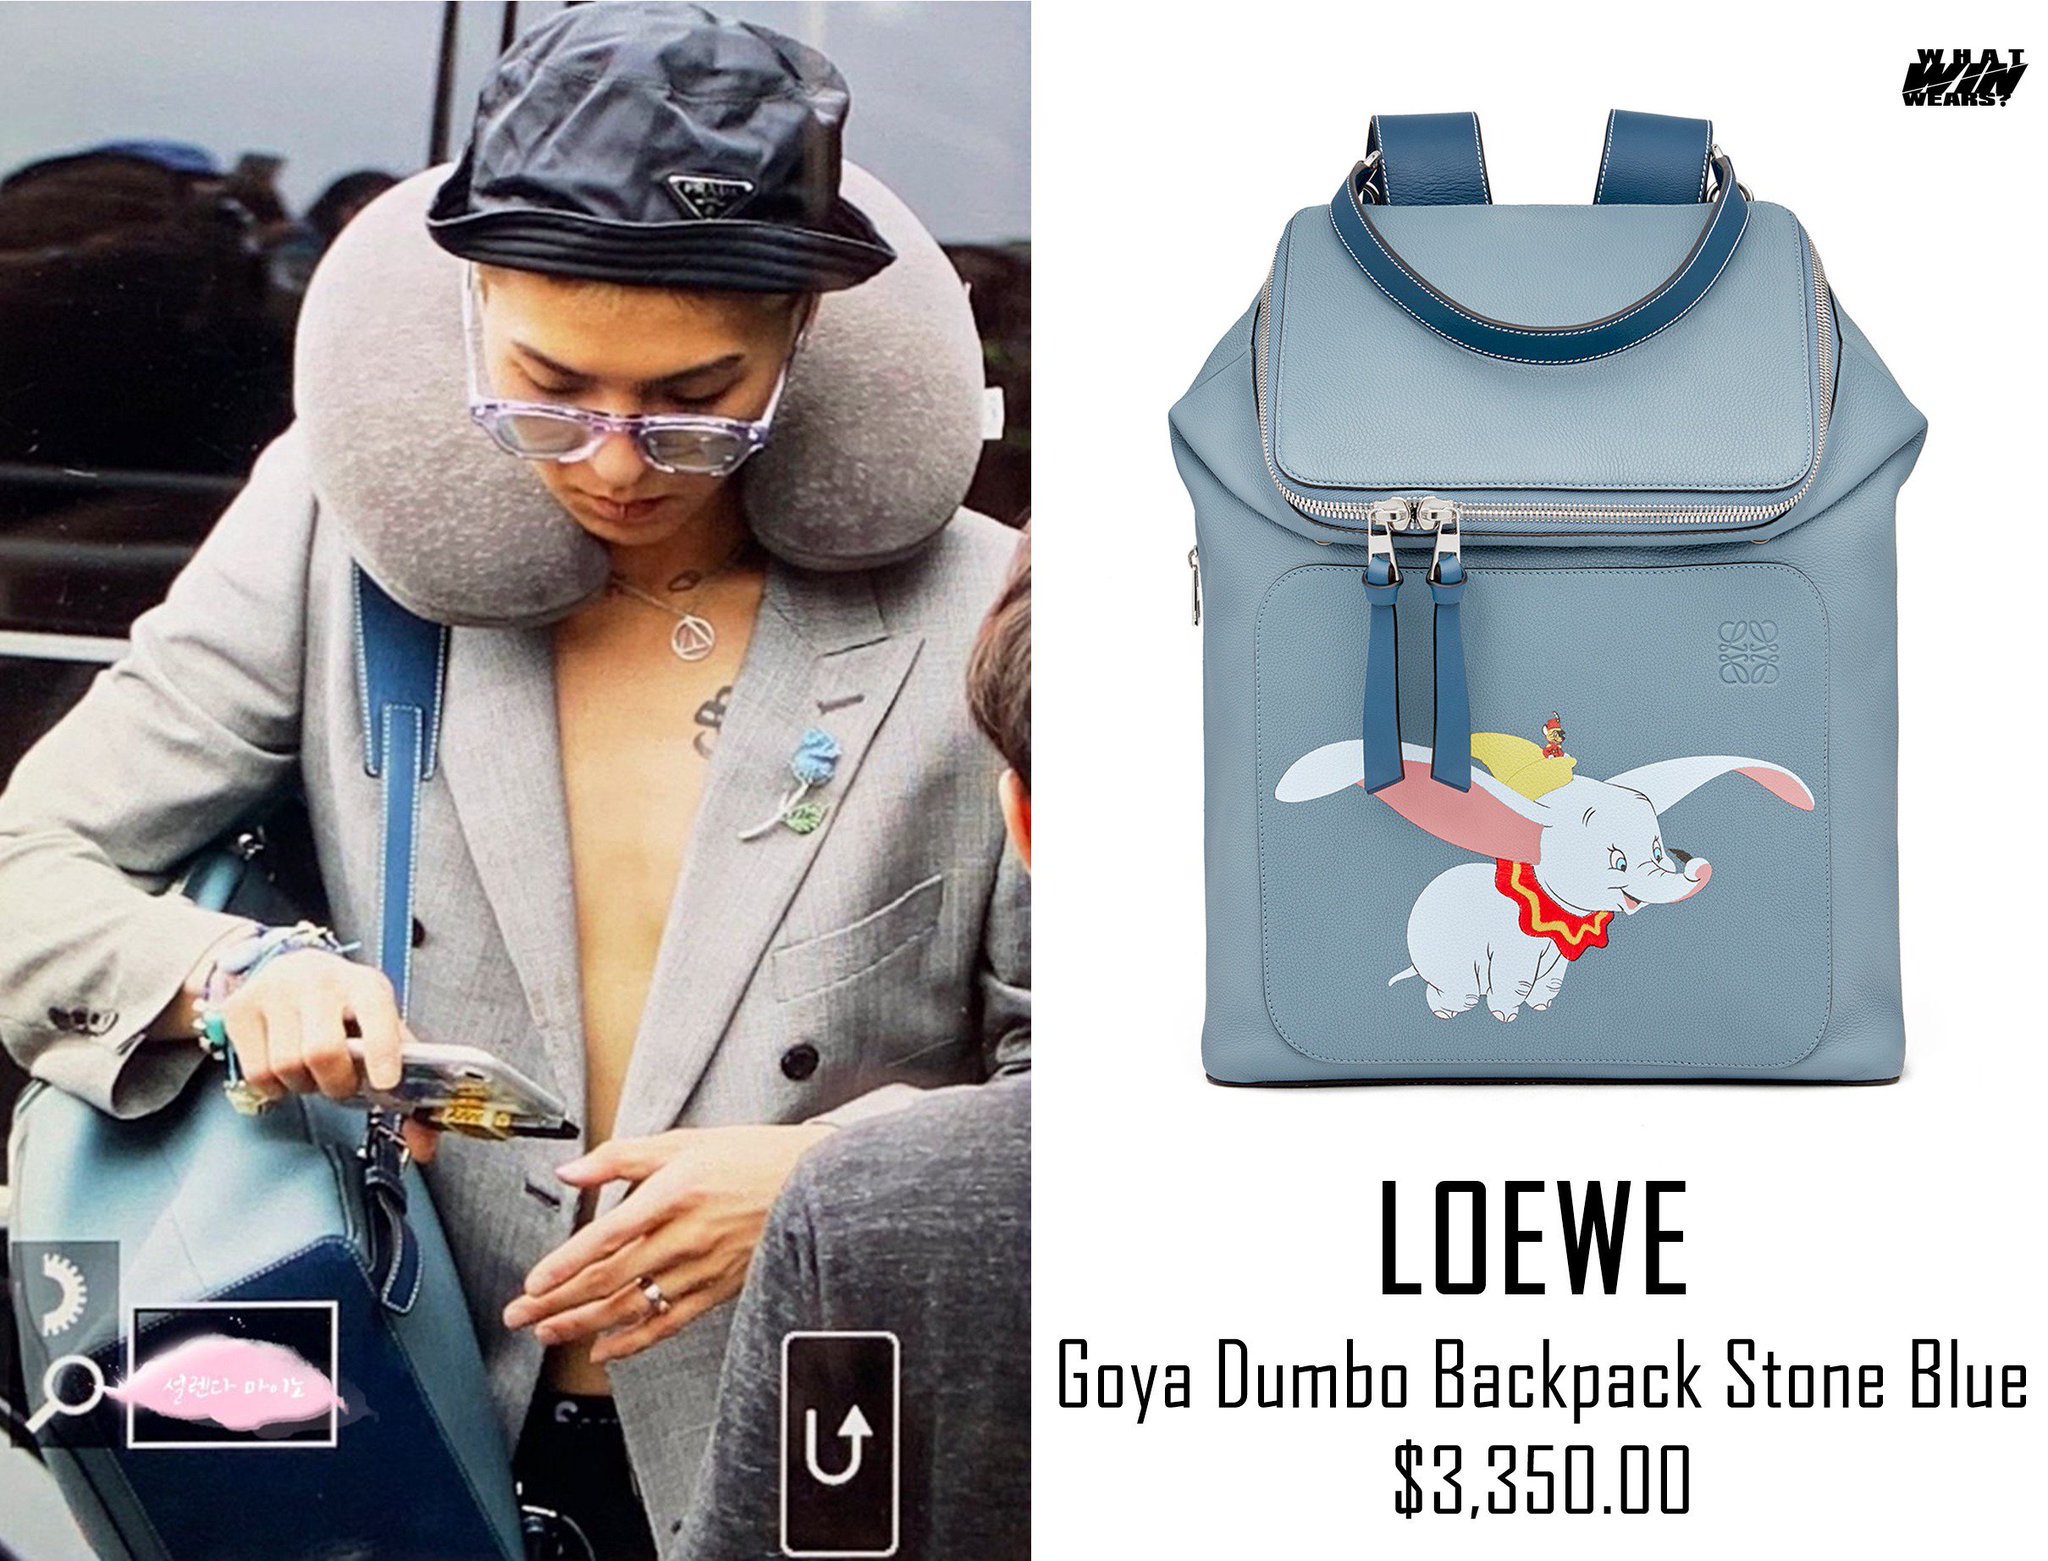 loewe backpack dumbo